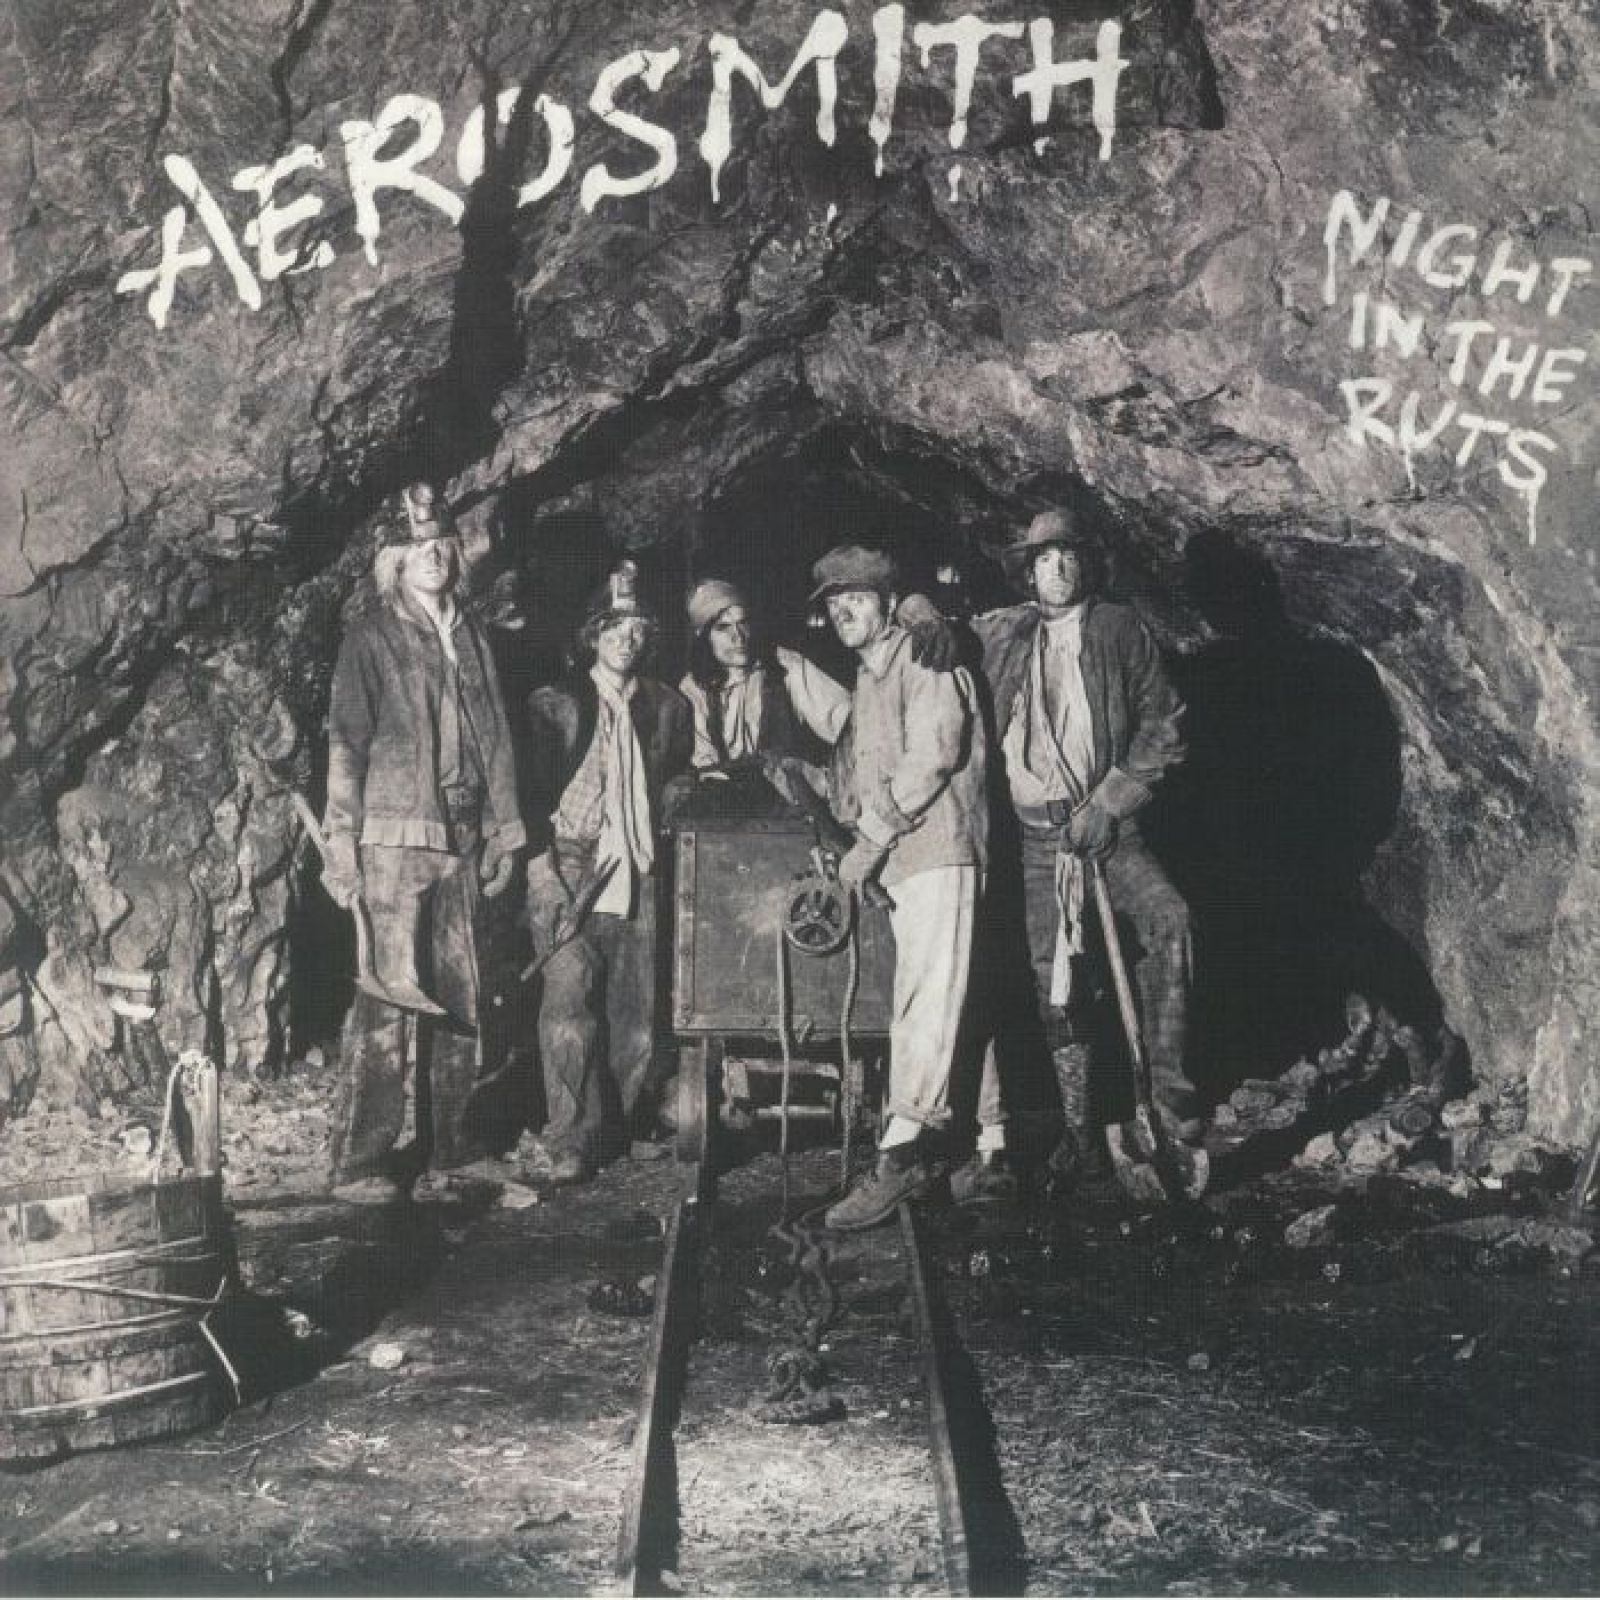 Виниловая пластинка Aerosmith, Night In The Ruts (0602455248657) виниловая пластинка aerosmith night in the ruts black vinyl lp